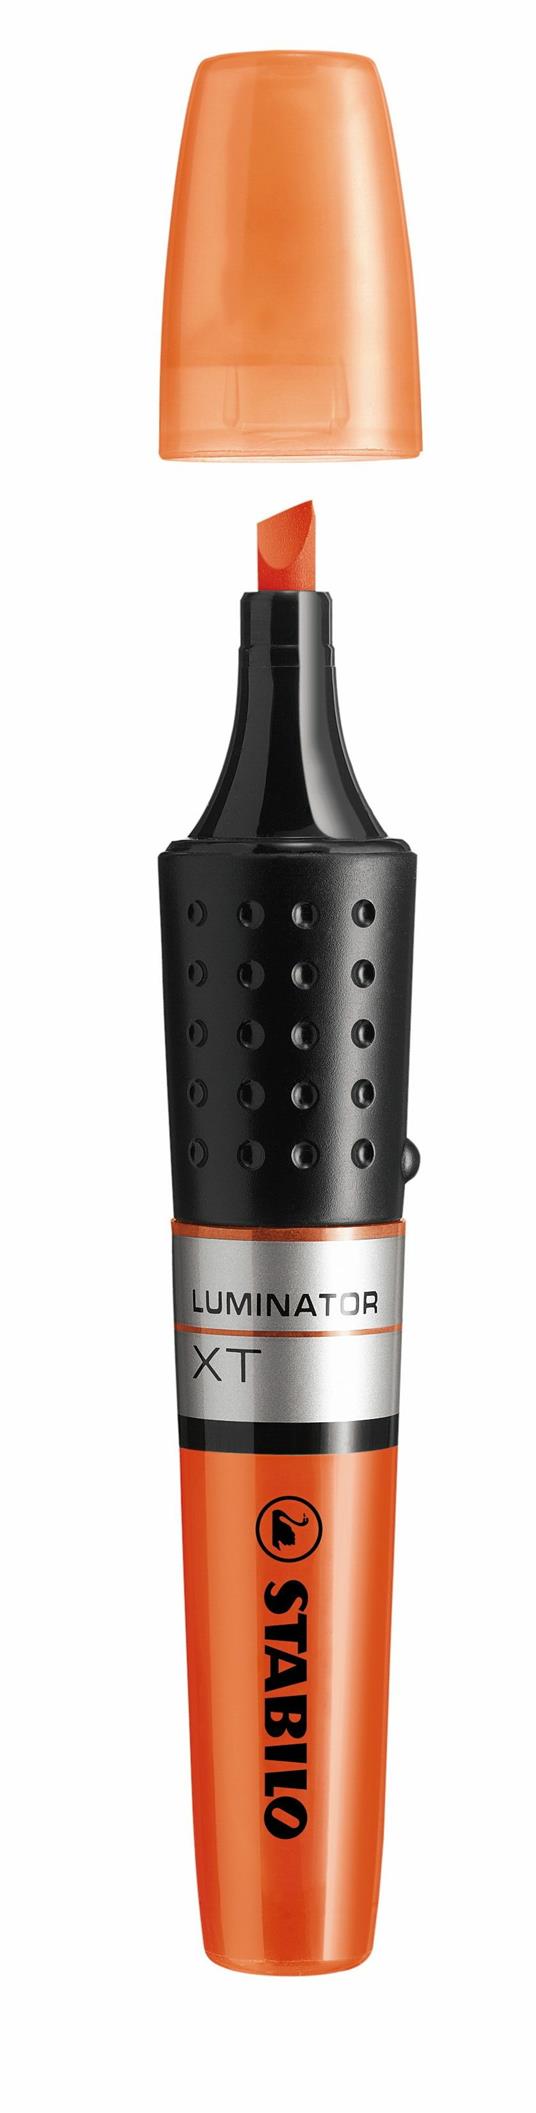 Evidenziatore - STABILO LUMINATOR - lunga durata e doppio tratto (2 + 5 mm) - Arancione